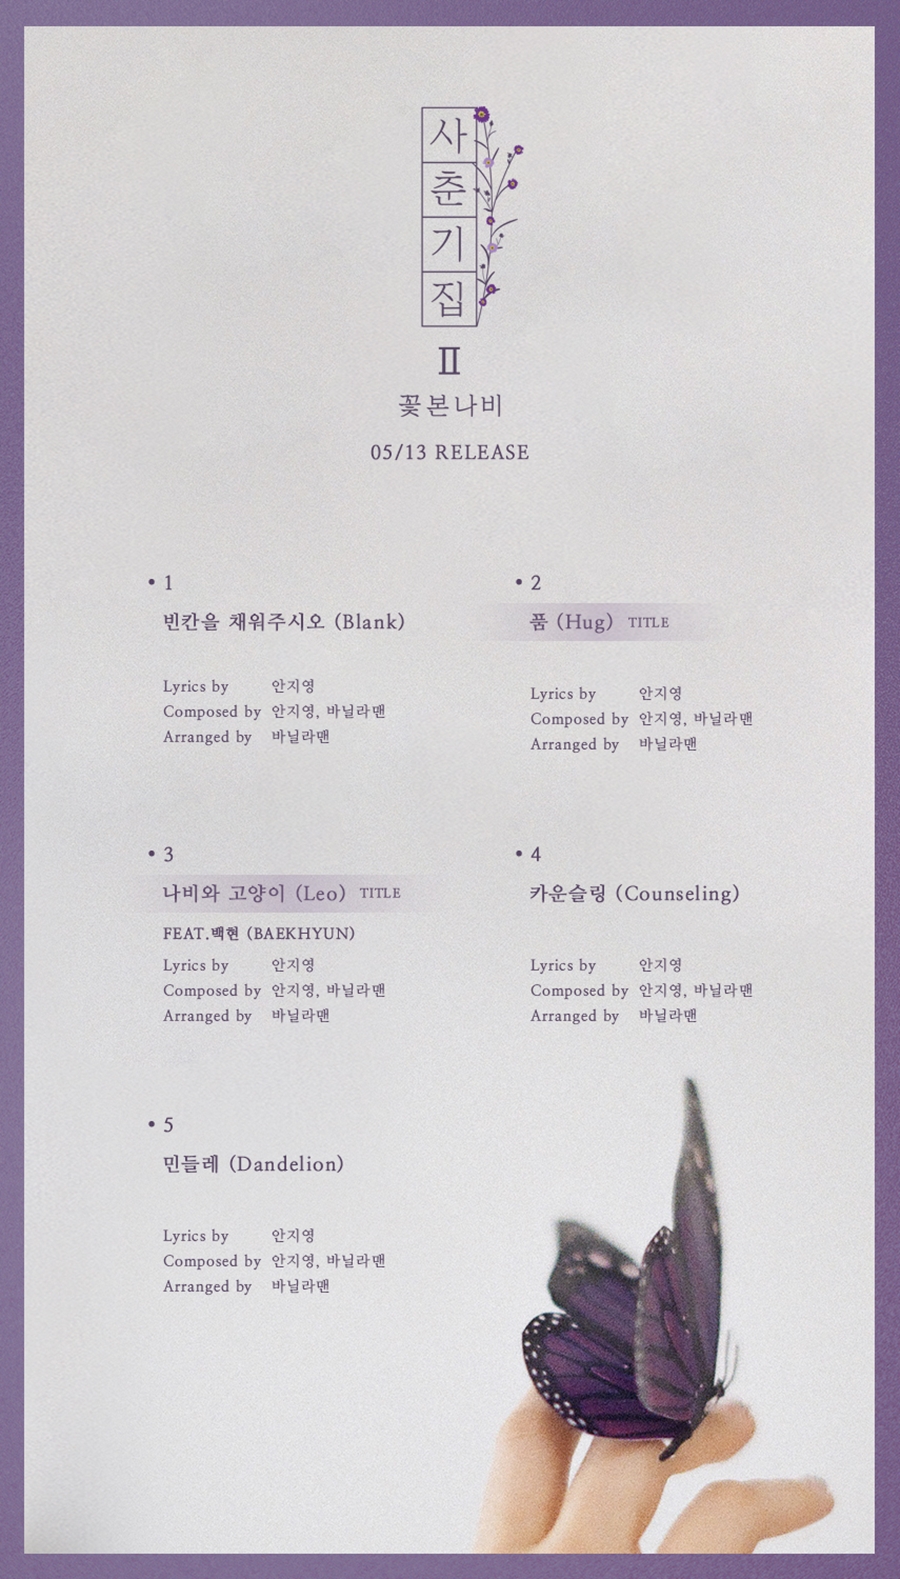 볼빨간사춘기, 엑소 백현과 듀엣곡 7일 선공개 / 사진: 쇼파르뮤직 제공